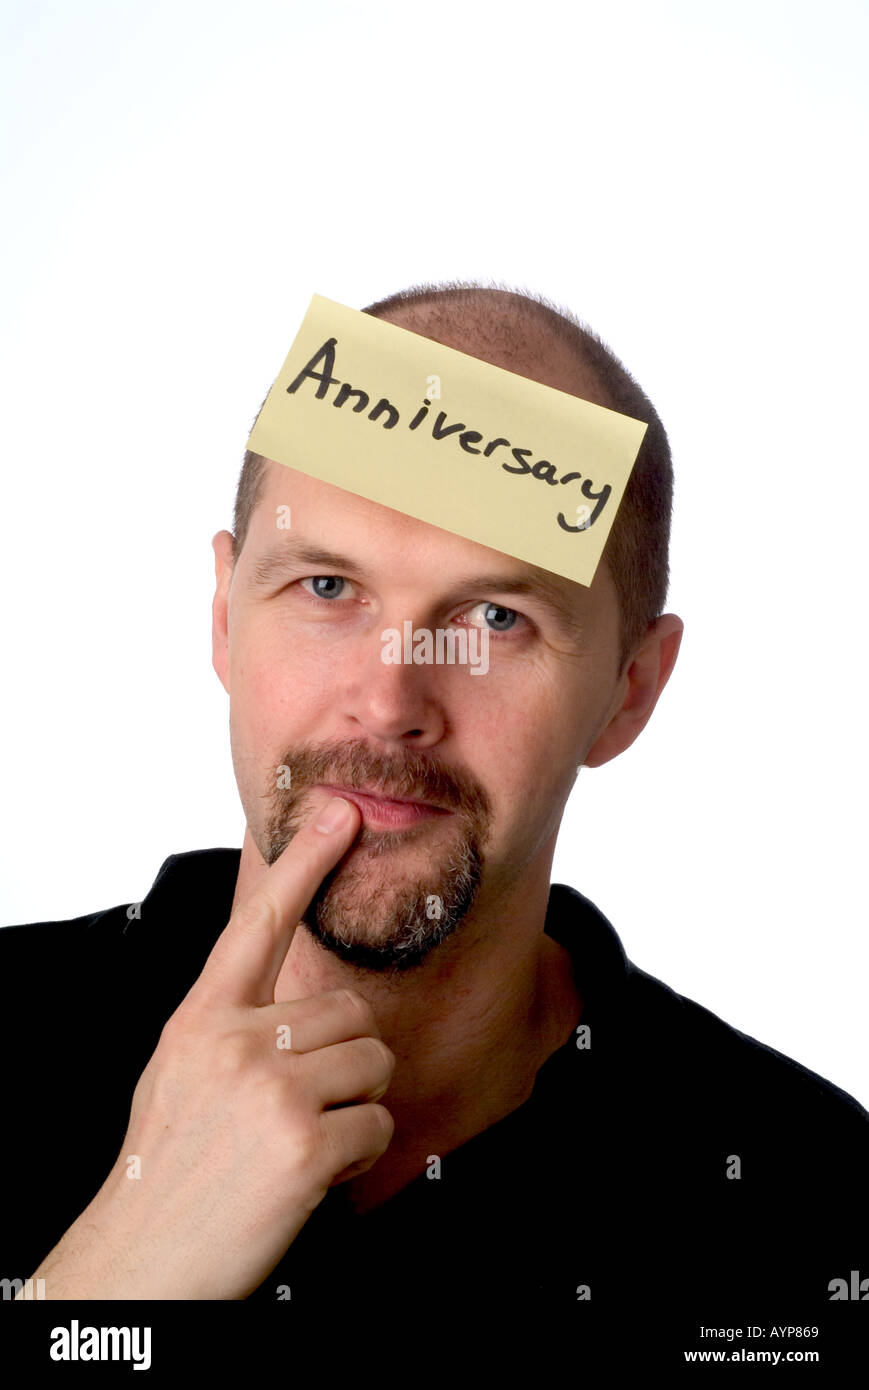 Anniversario uomo con post-it sulla testa rappresenta che egli deve ricordare il suo anniversario di matrimonio memoria bene male dimenticato Foto Stock